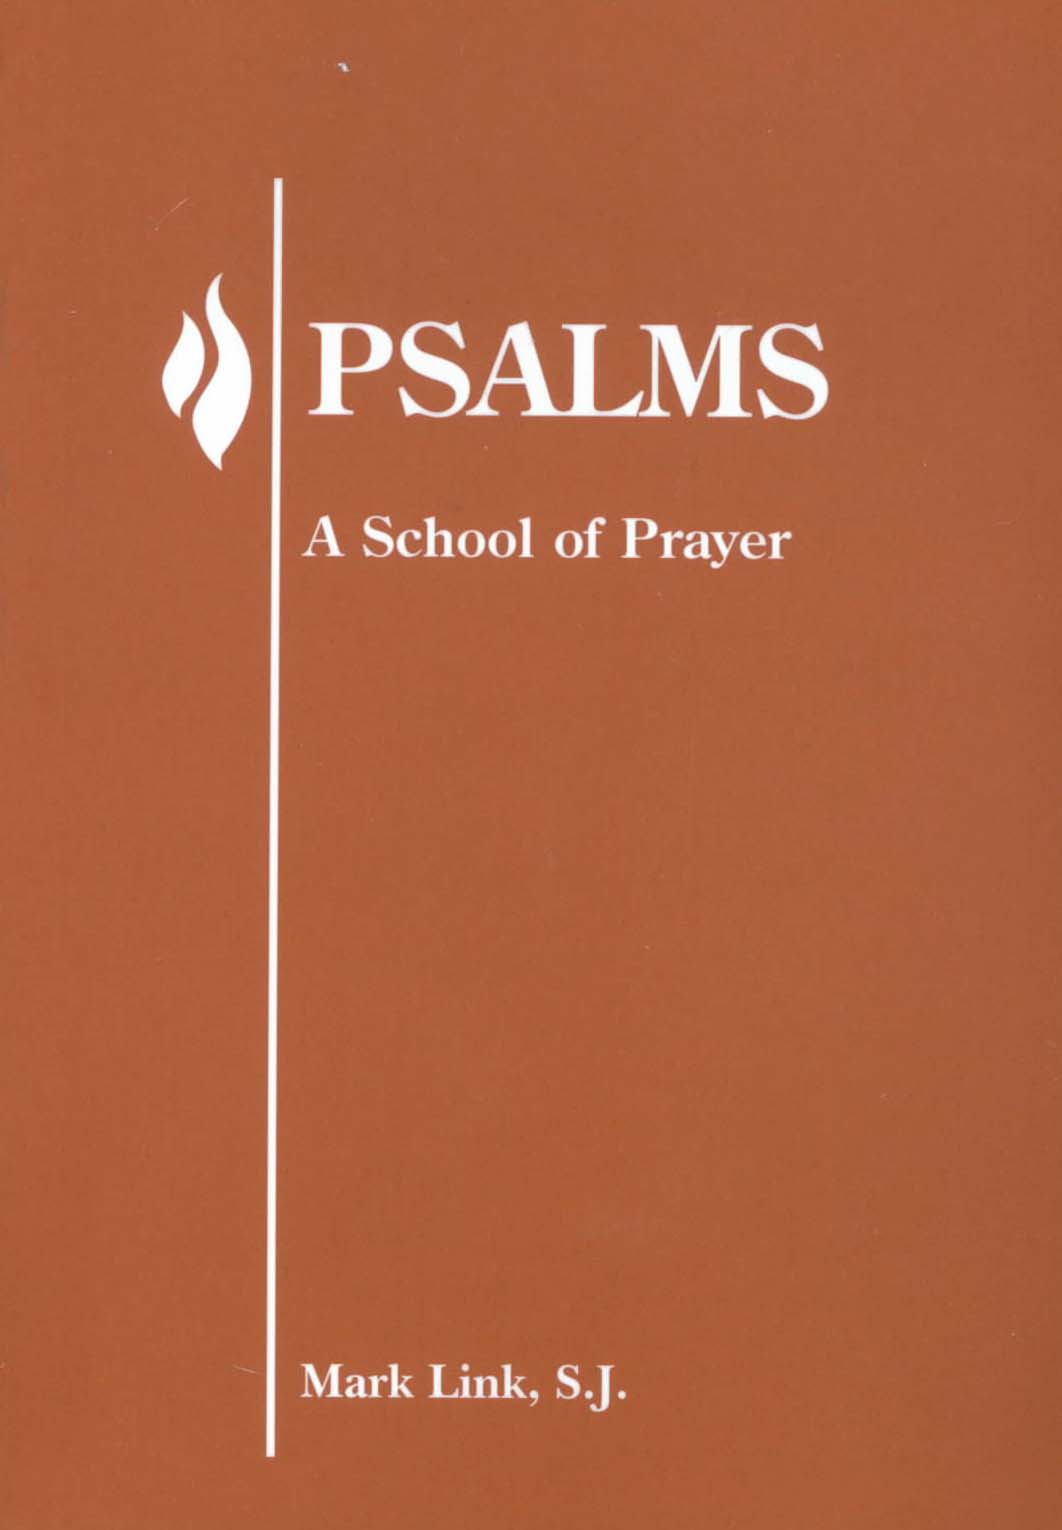 Psalms: A School of Prayer by Mark Link, S.J. 347-9780883474631